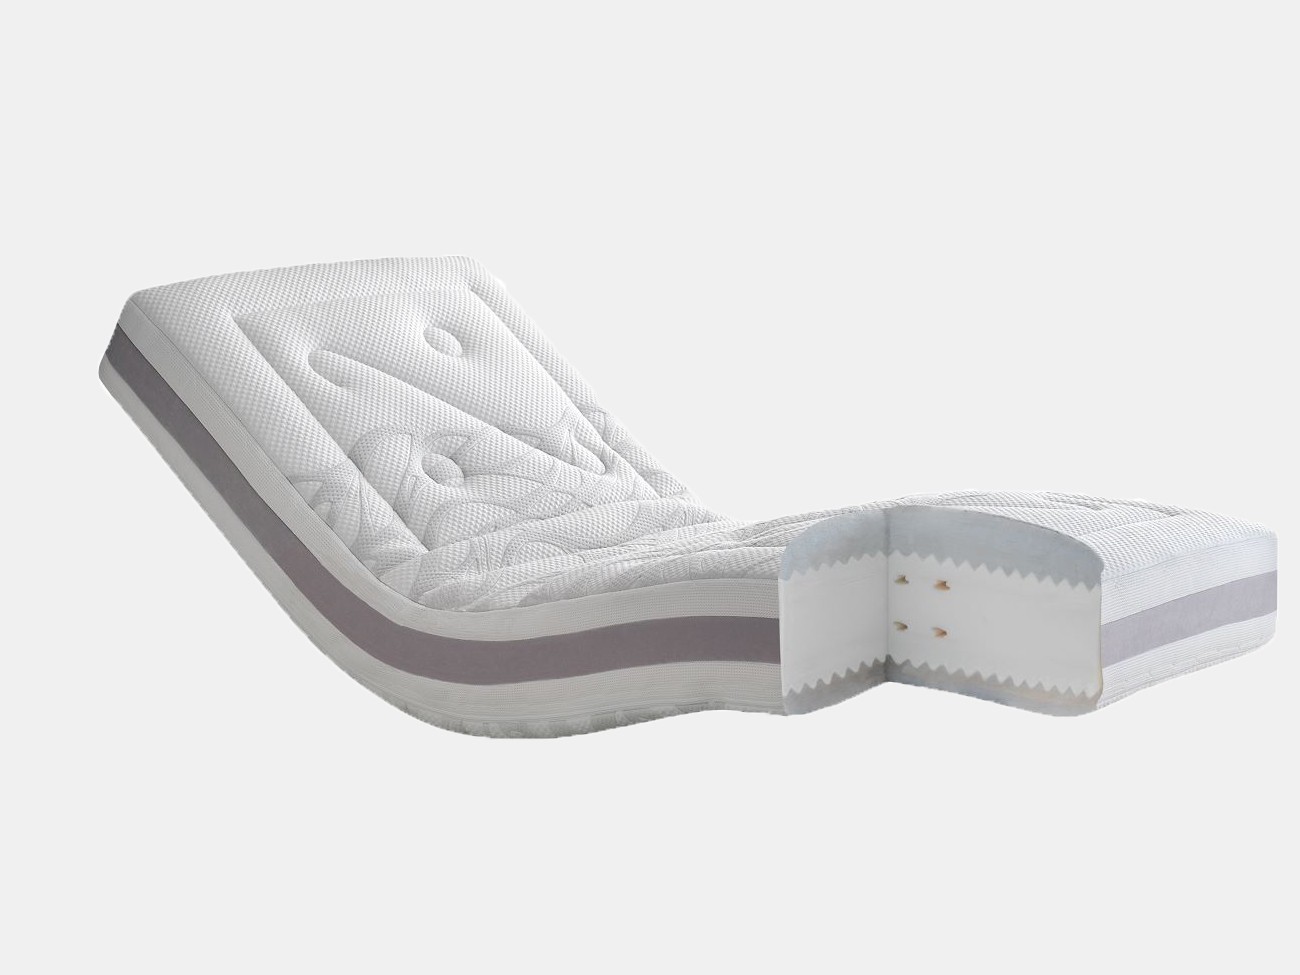 Relaxation mattress